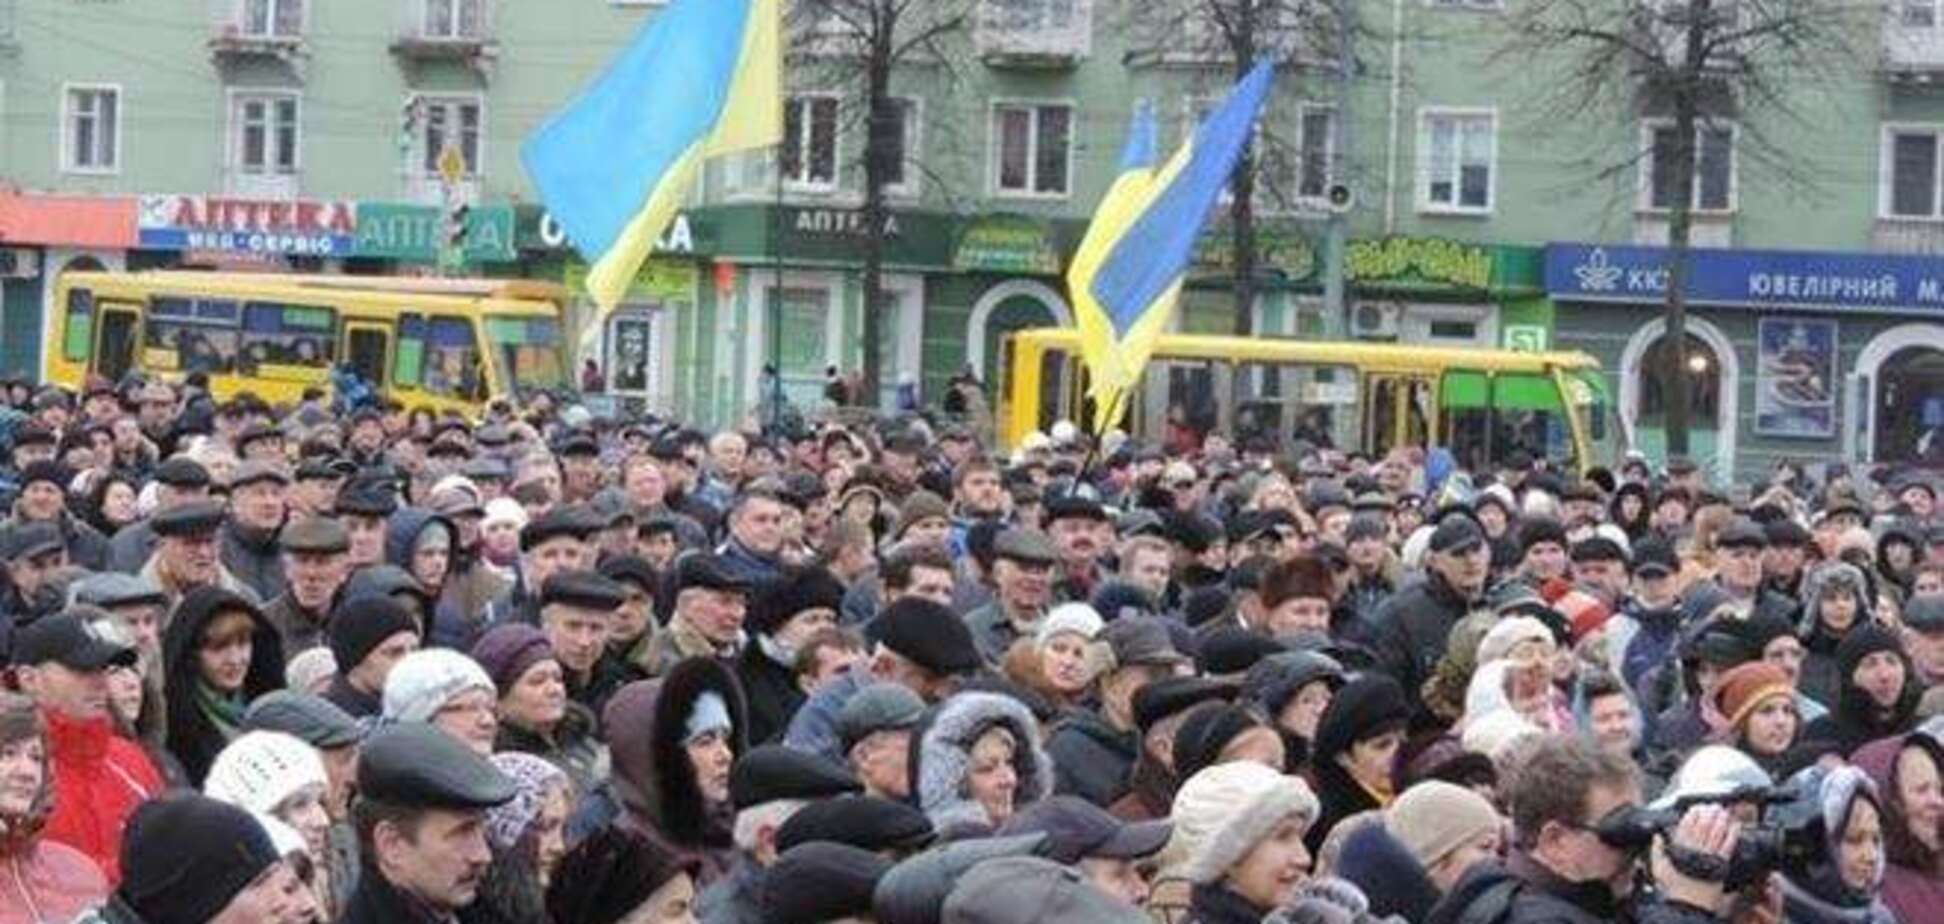 Ривне провозгласило себя городом без Януковича